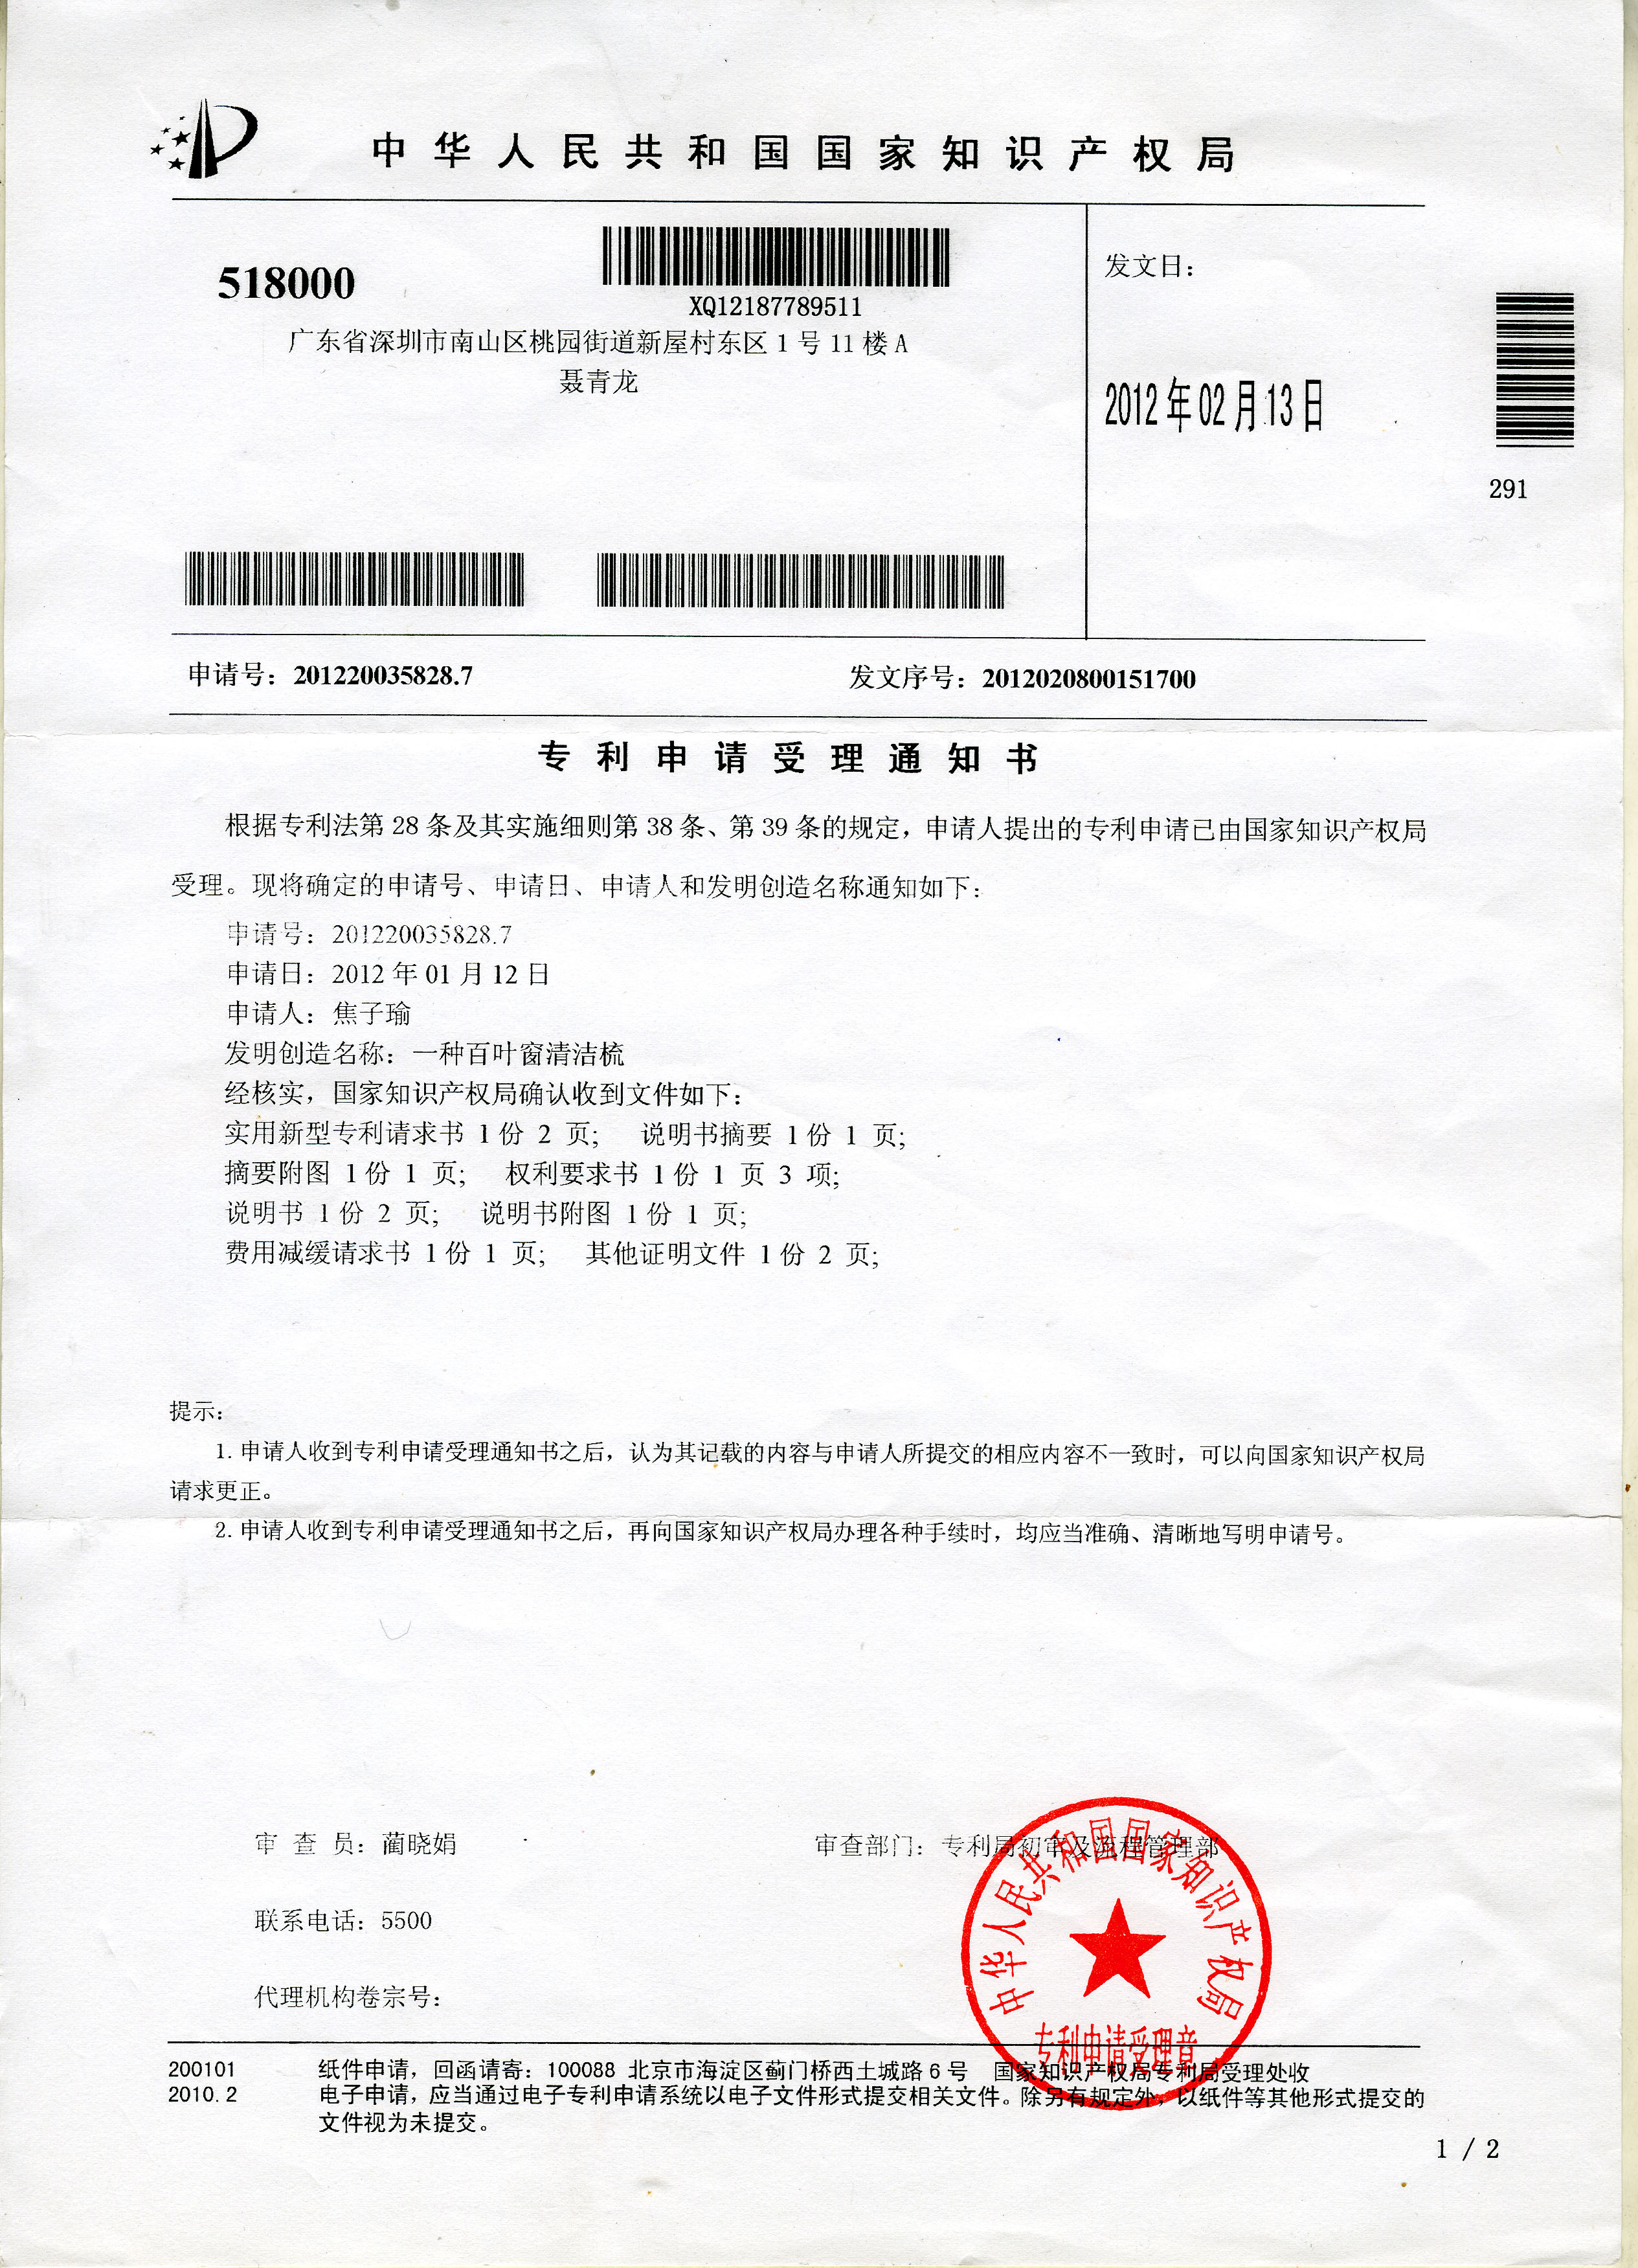 焦子瑜國家專利證書